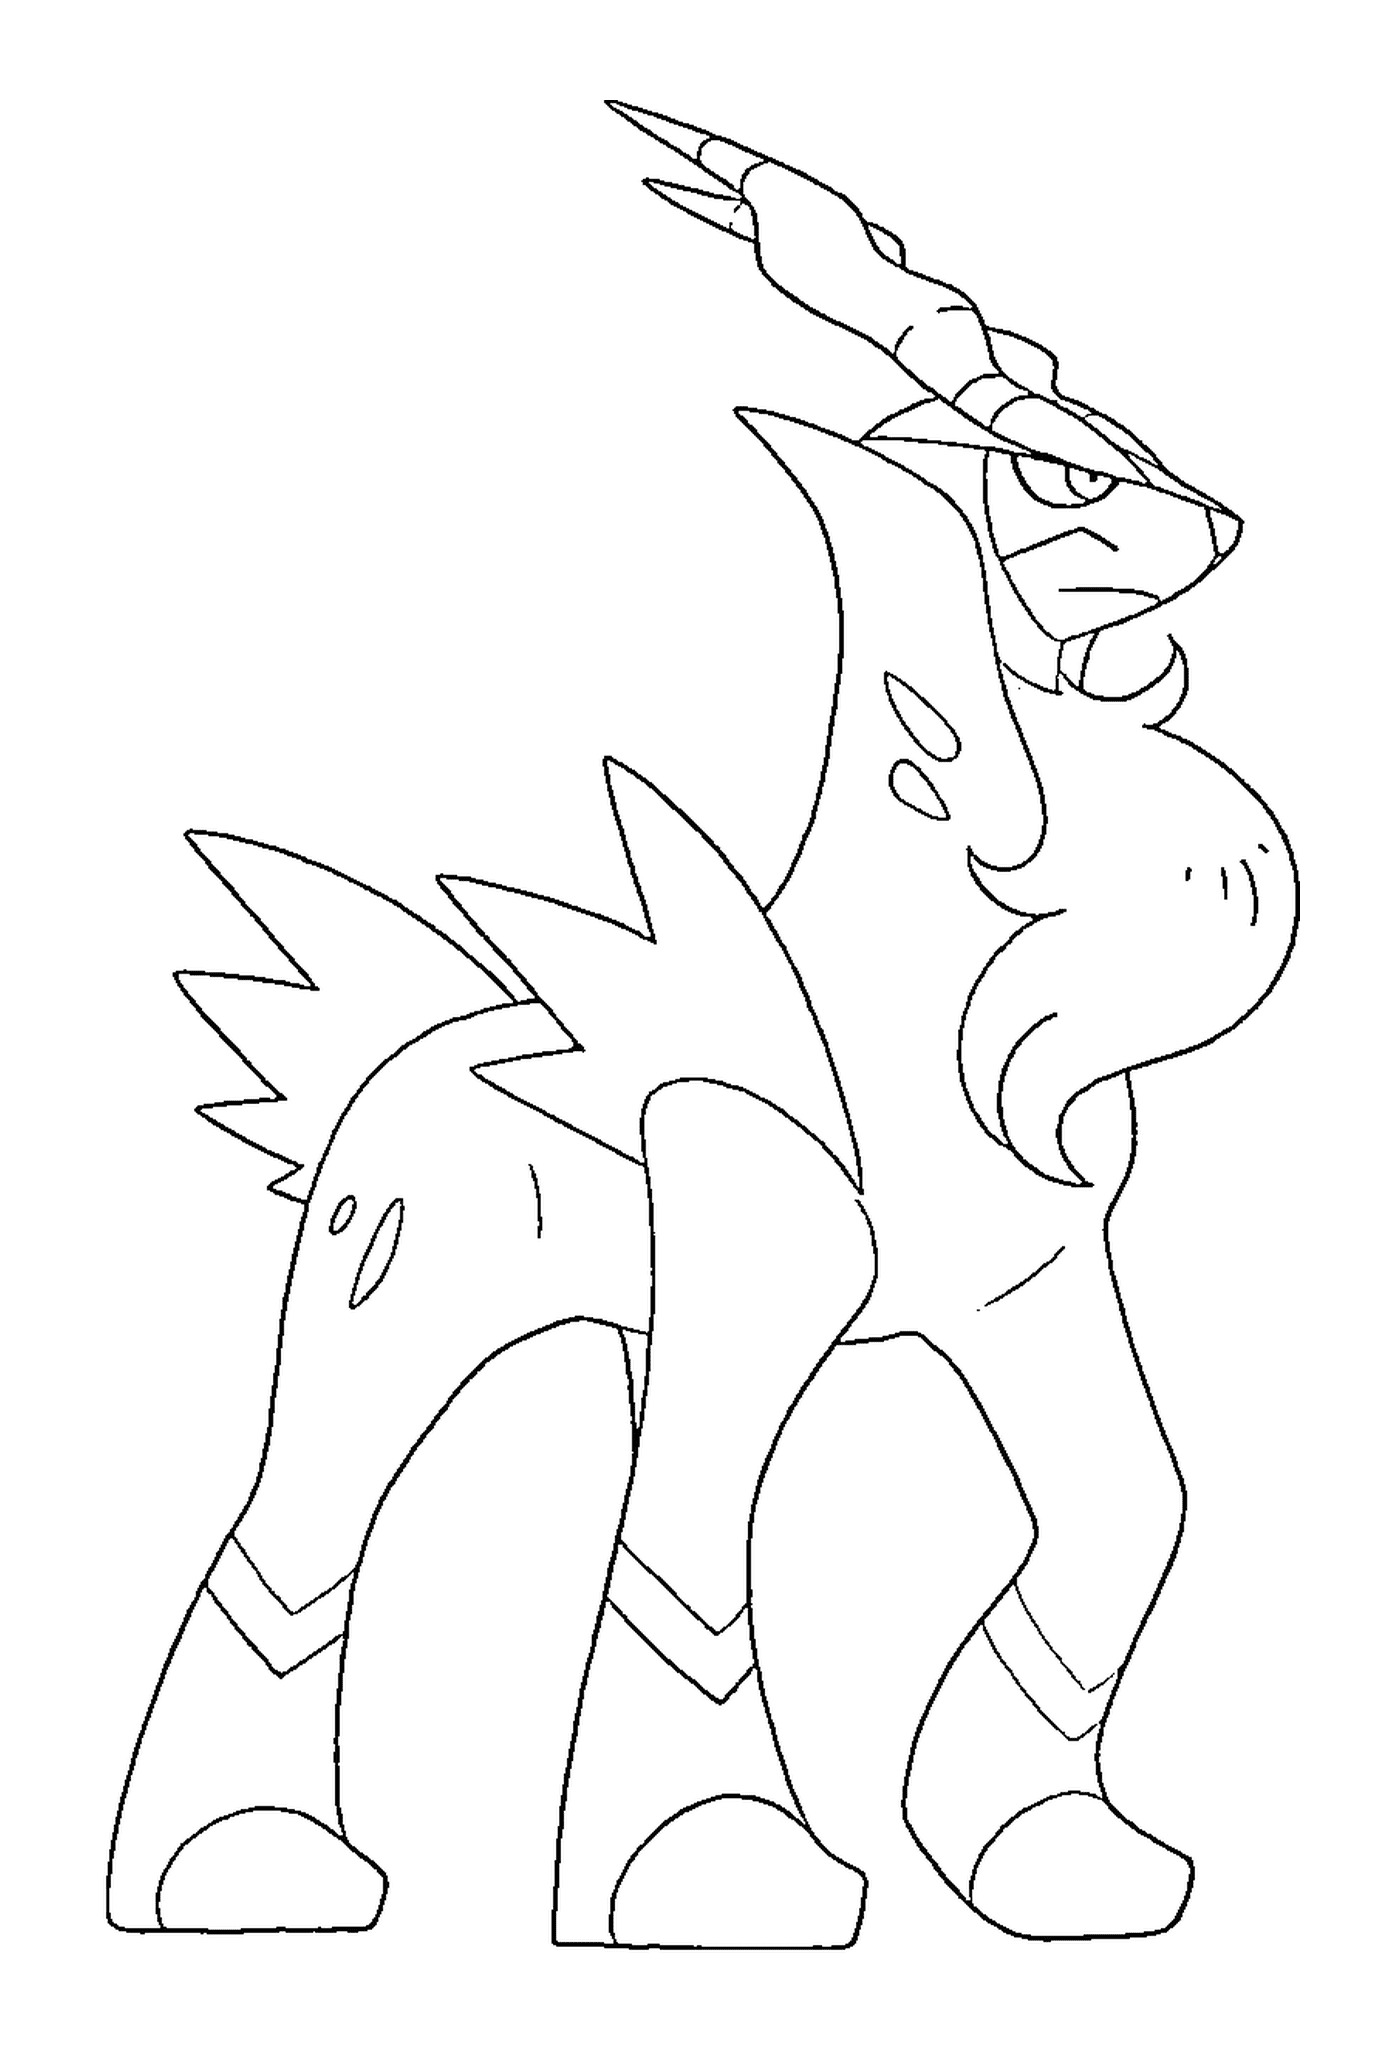  Cobaltium Pokémon disegnato nero 